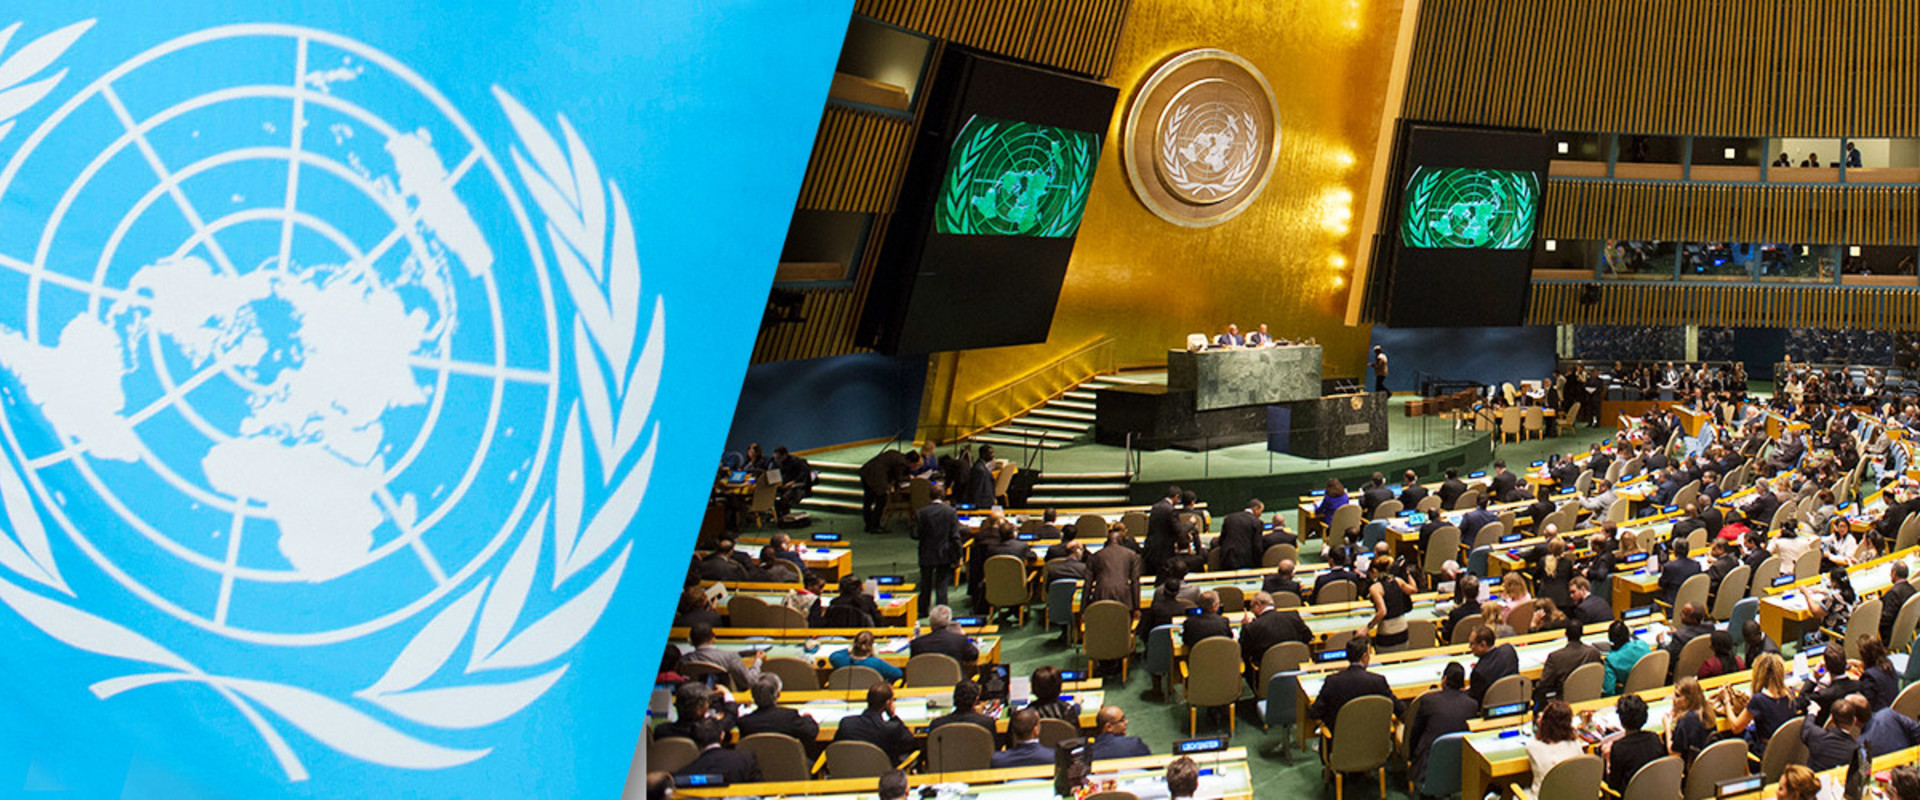 Международный год 2008. Генеральная Ассамблея и совет безопасности ООН. Международная конференция ООН В 1994 В Каире. Генеральная Ассамблея ООН 1990 год. Генеральная Ассамблея ООН 1970.